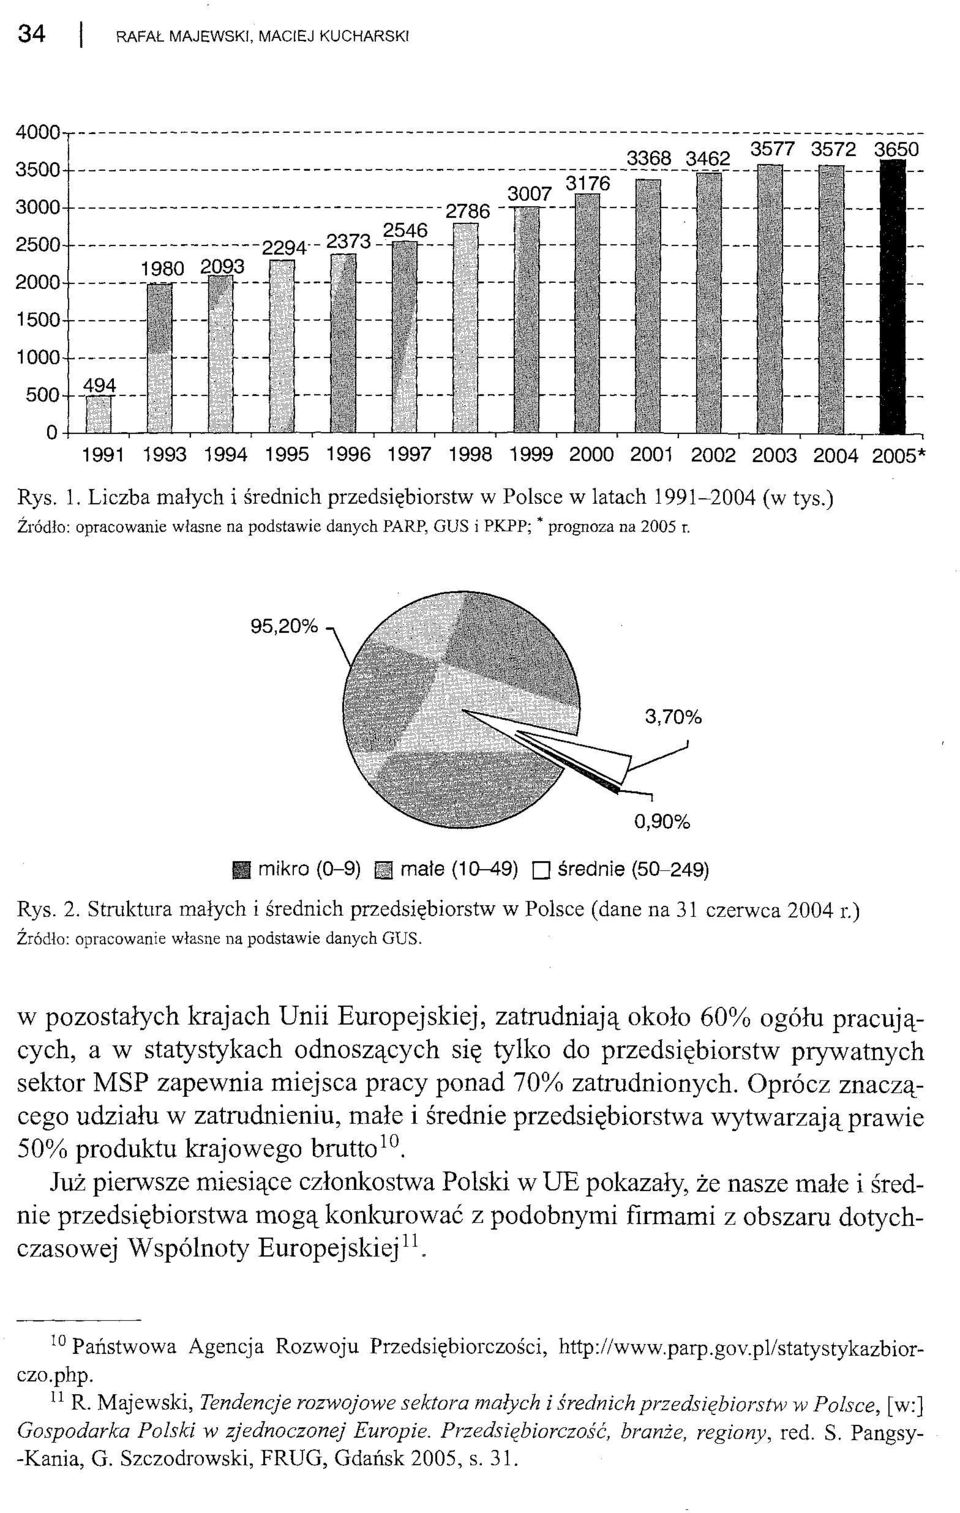 2002 2003 2004 2005* Rys. 1. Liczba małych i średnich przedsiębiorstw w Polsce w latach 1991-2004 (w tys.) Źródło: opracowanie własne na podstawie danych PARP, GUS i PKPP; * prognoza na 2005 r.